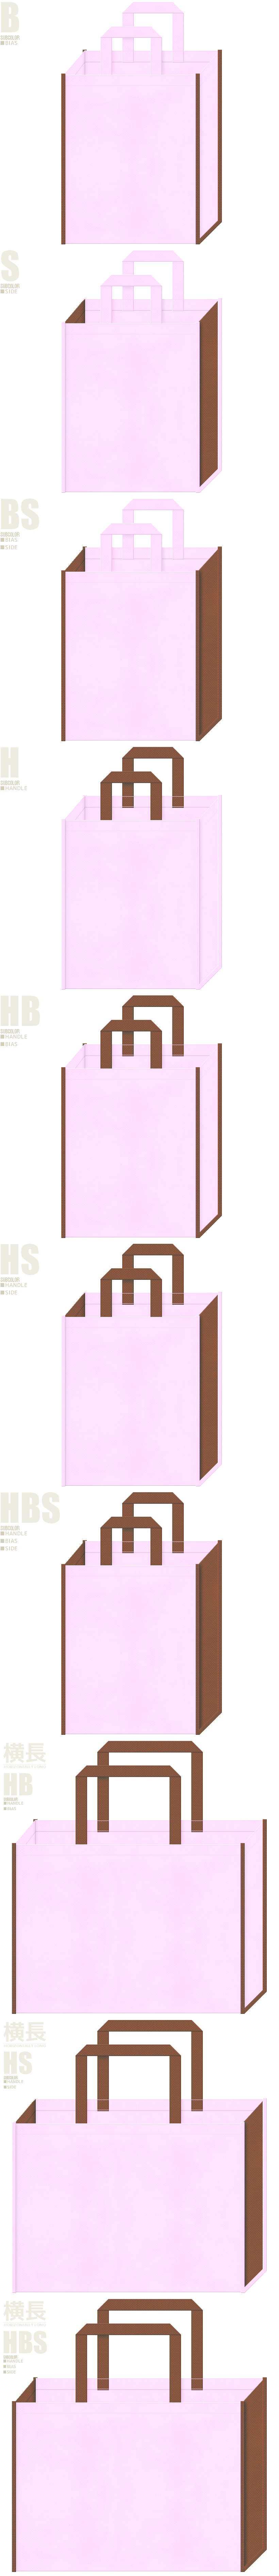 不織布バッグカラーシミュレーション10種：パステルピンク色と茶色